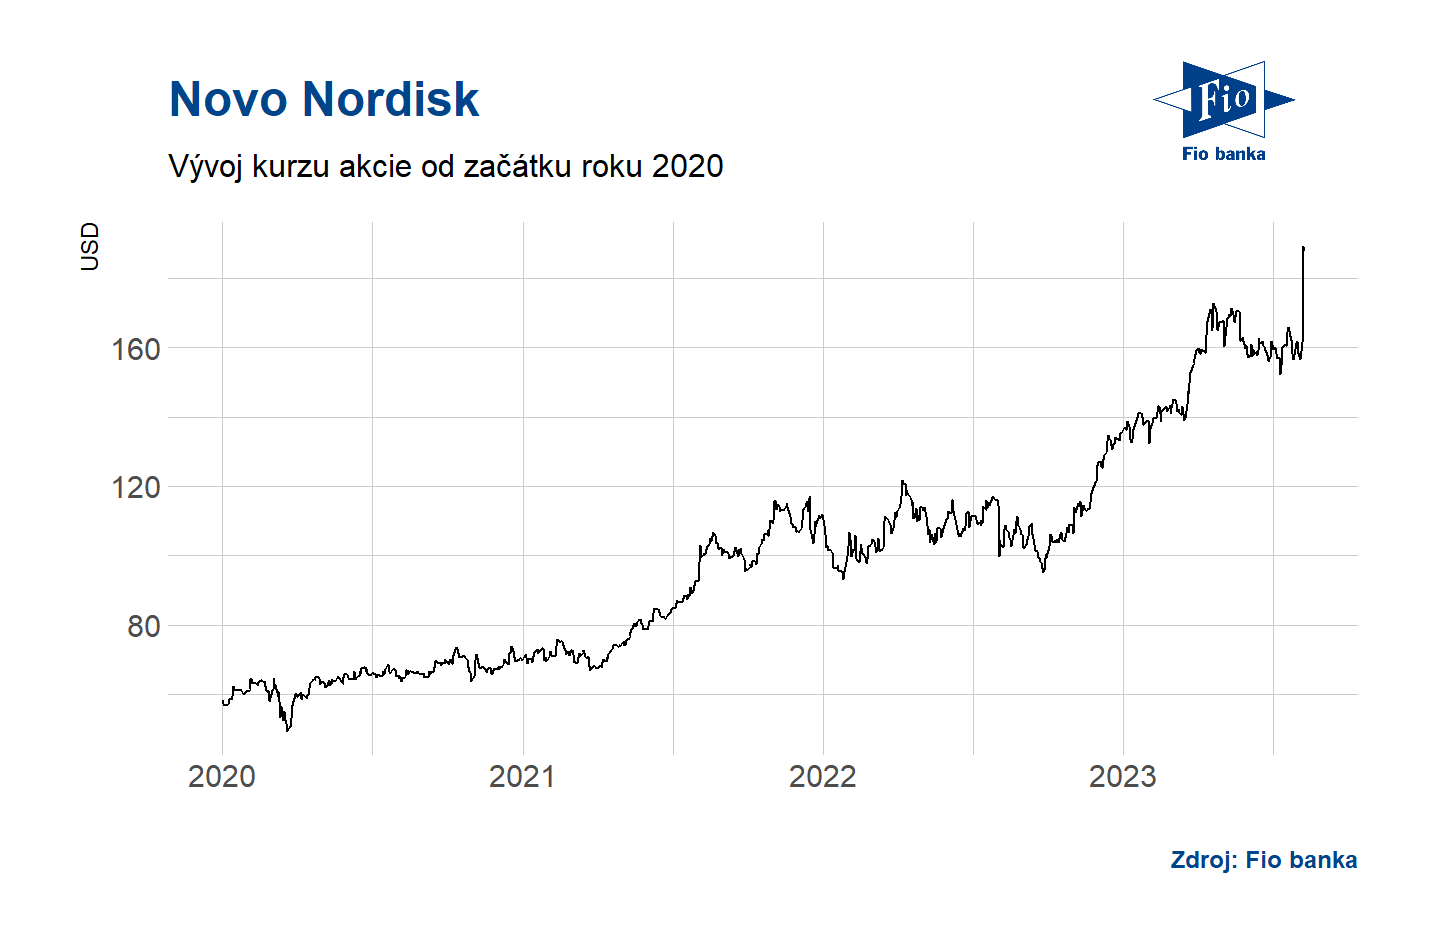 Vývoj depozitních certifikátů Novo Nordisk